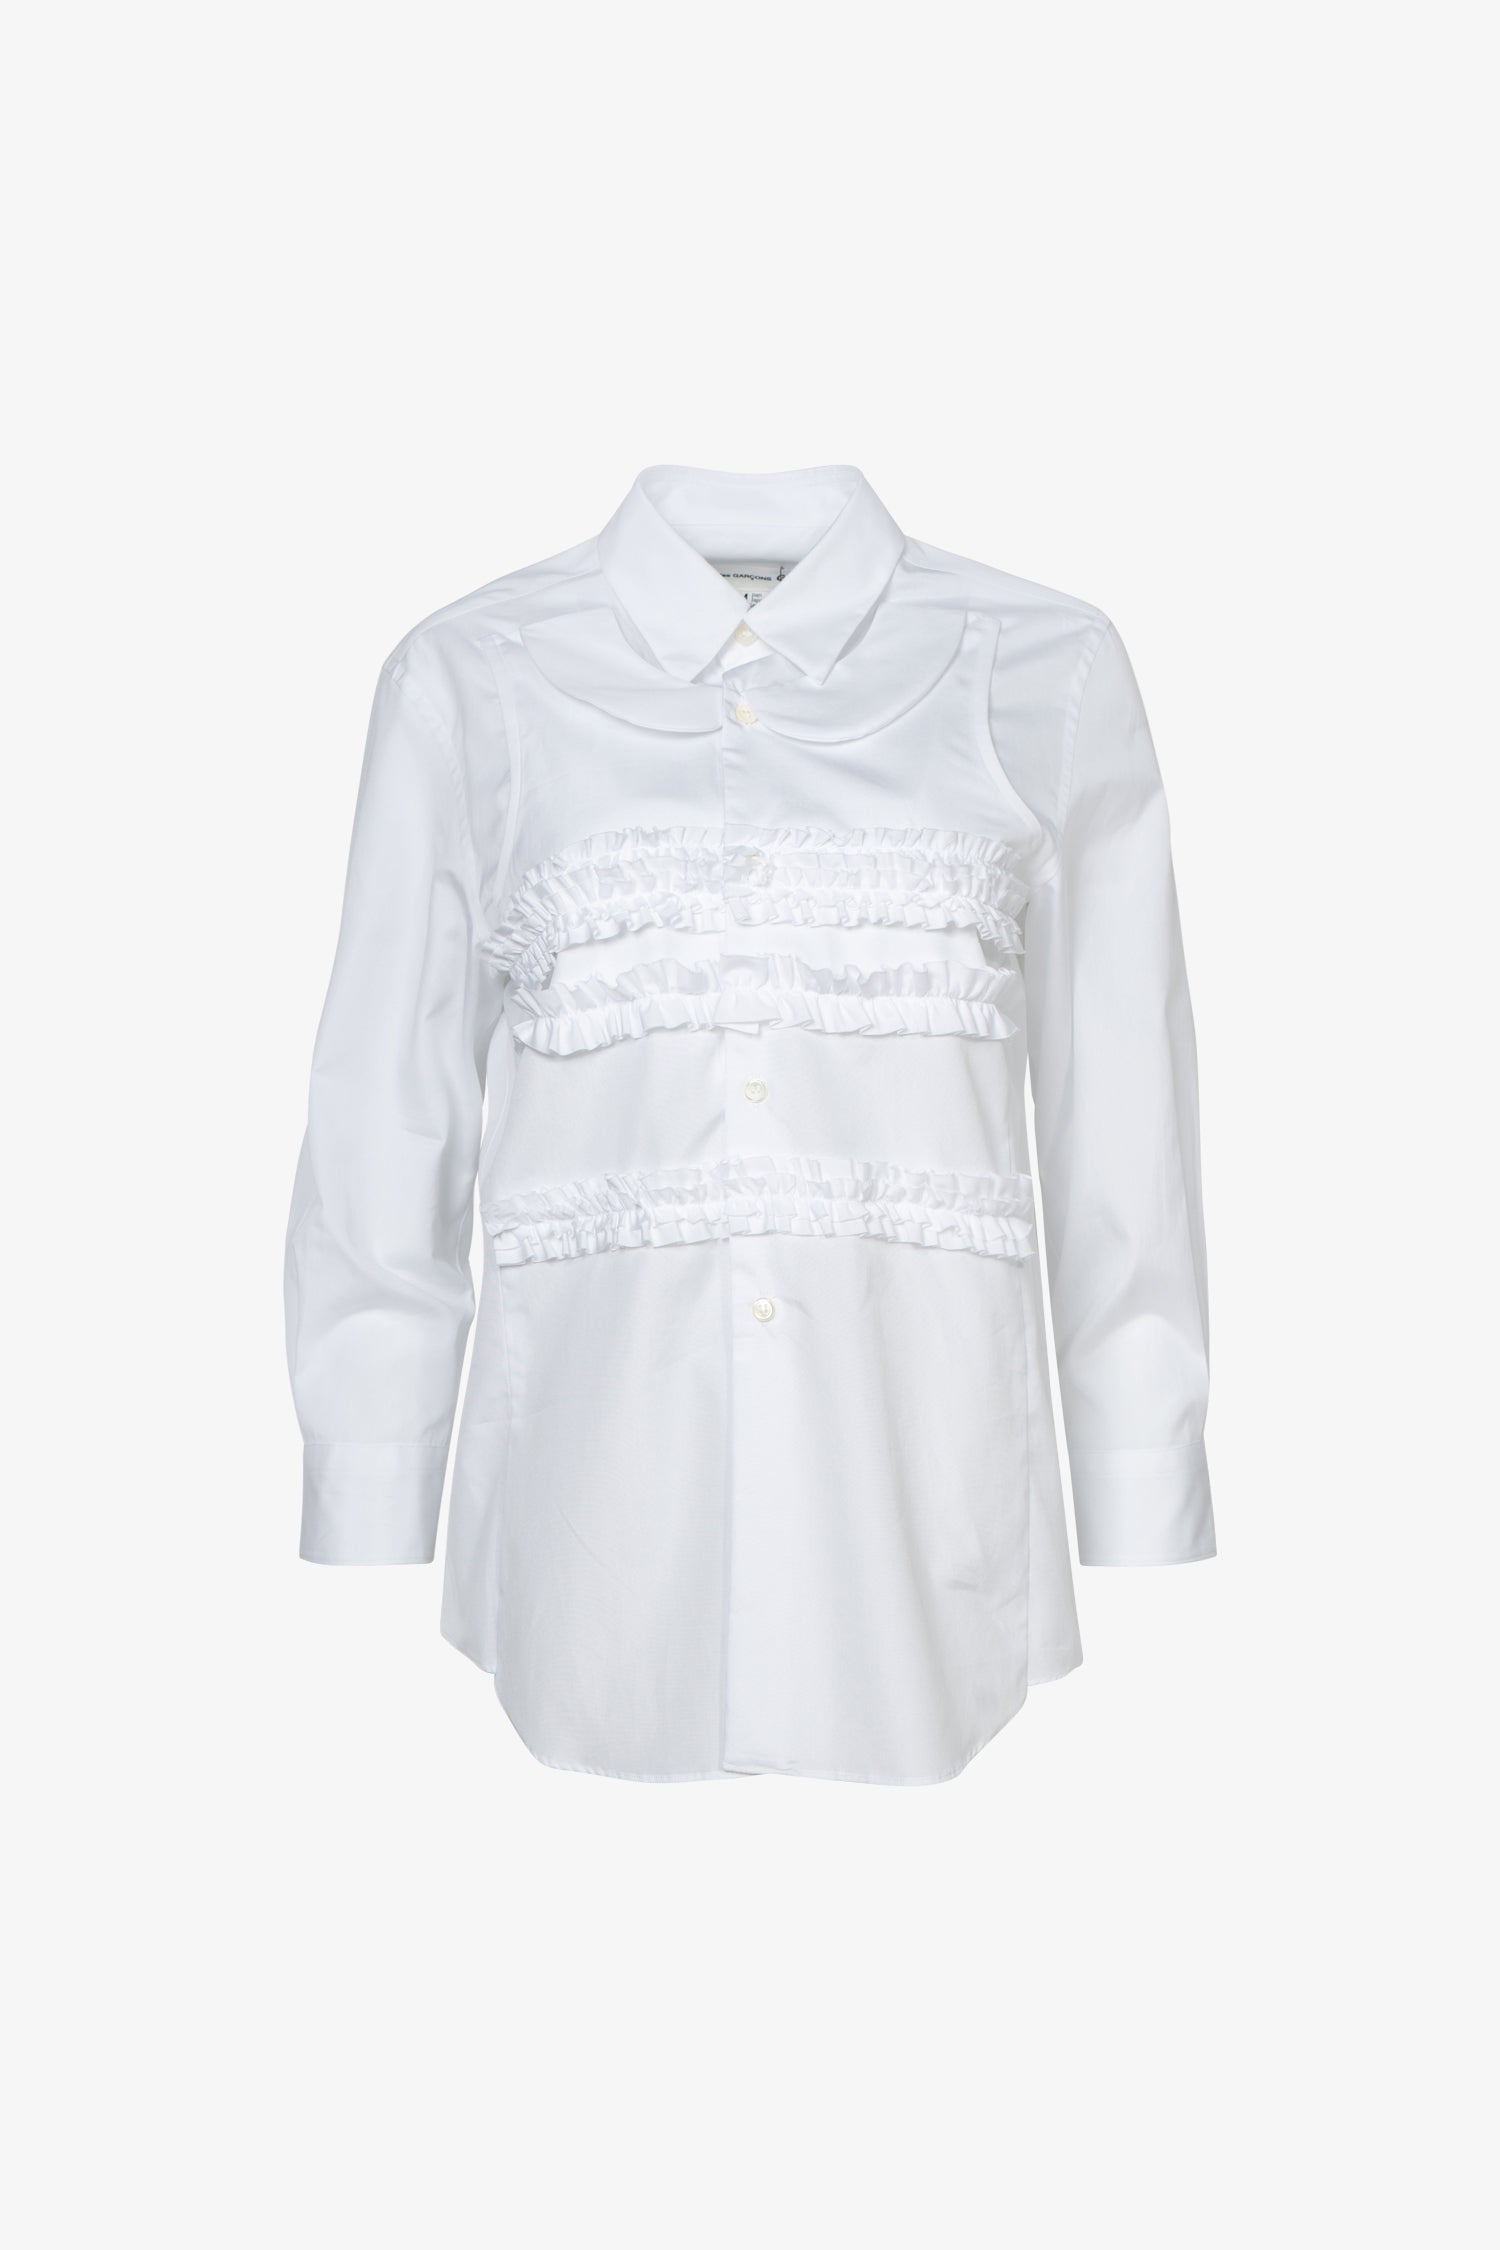 Selectshop FRAME - COMME DES GARCONS GIRL Layered Collar Long Sleeve Shirt Outerwear Dubai